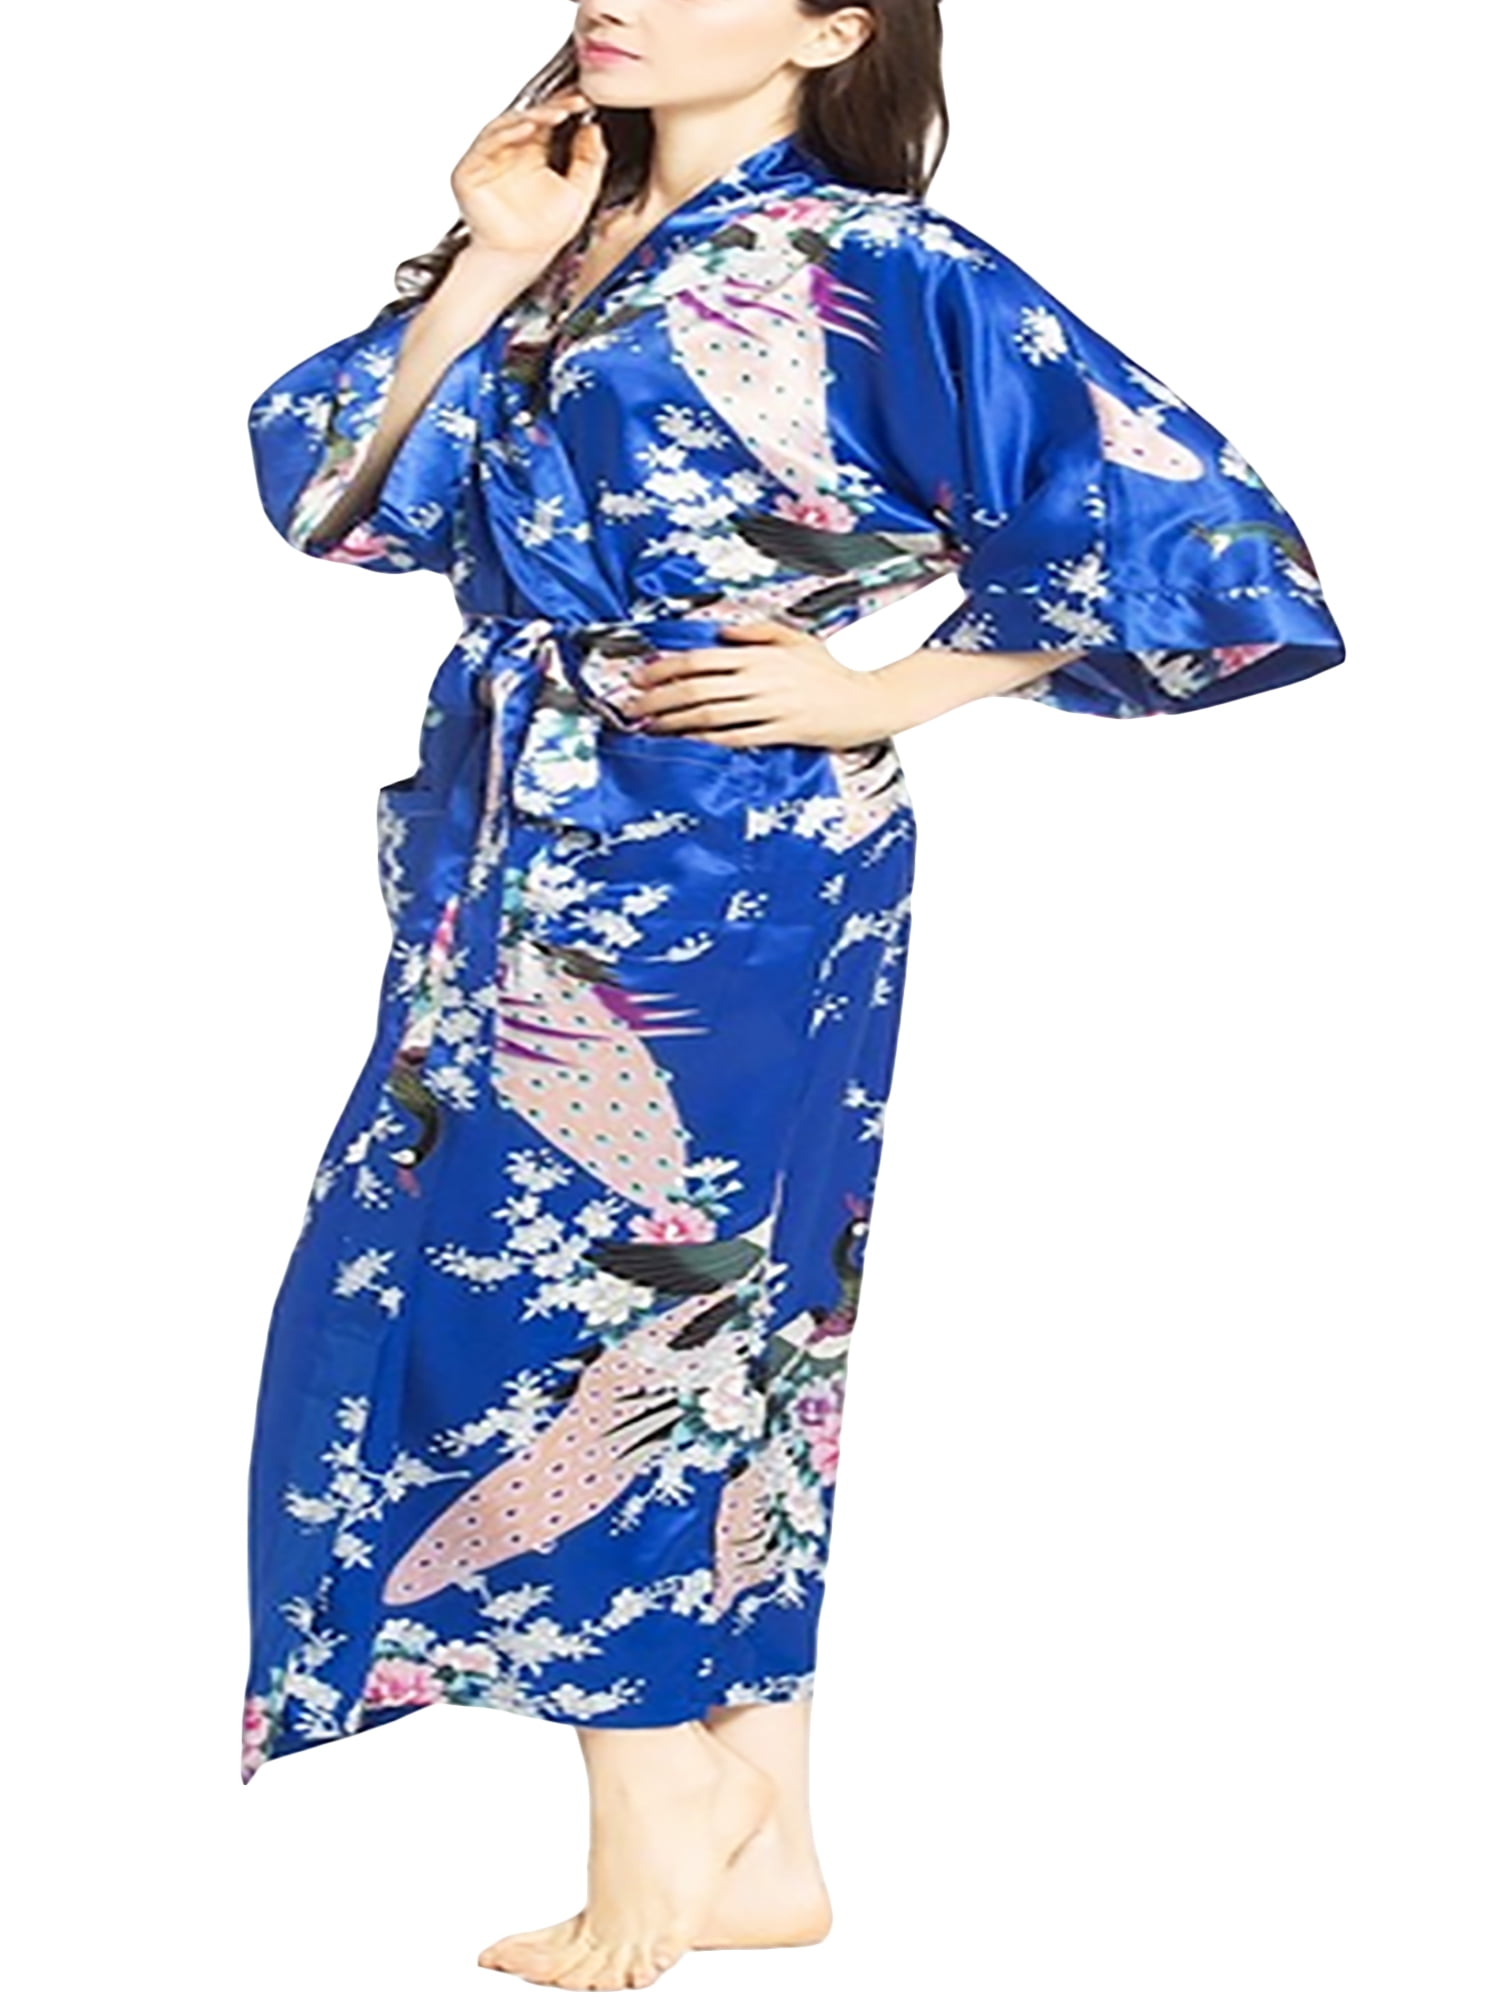 S M L XL 2XL 3XL Navy Blue Women's Silk Long Style Robe Gown Bathrobe Kimono Sz 